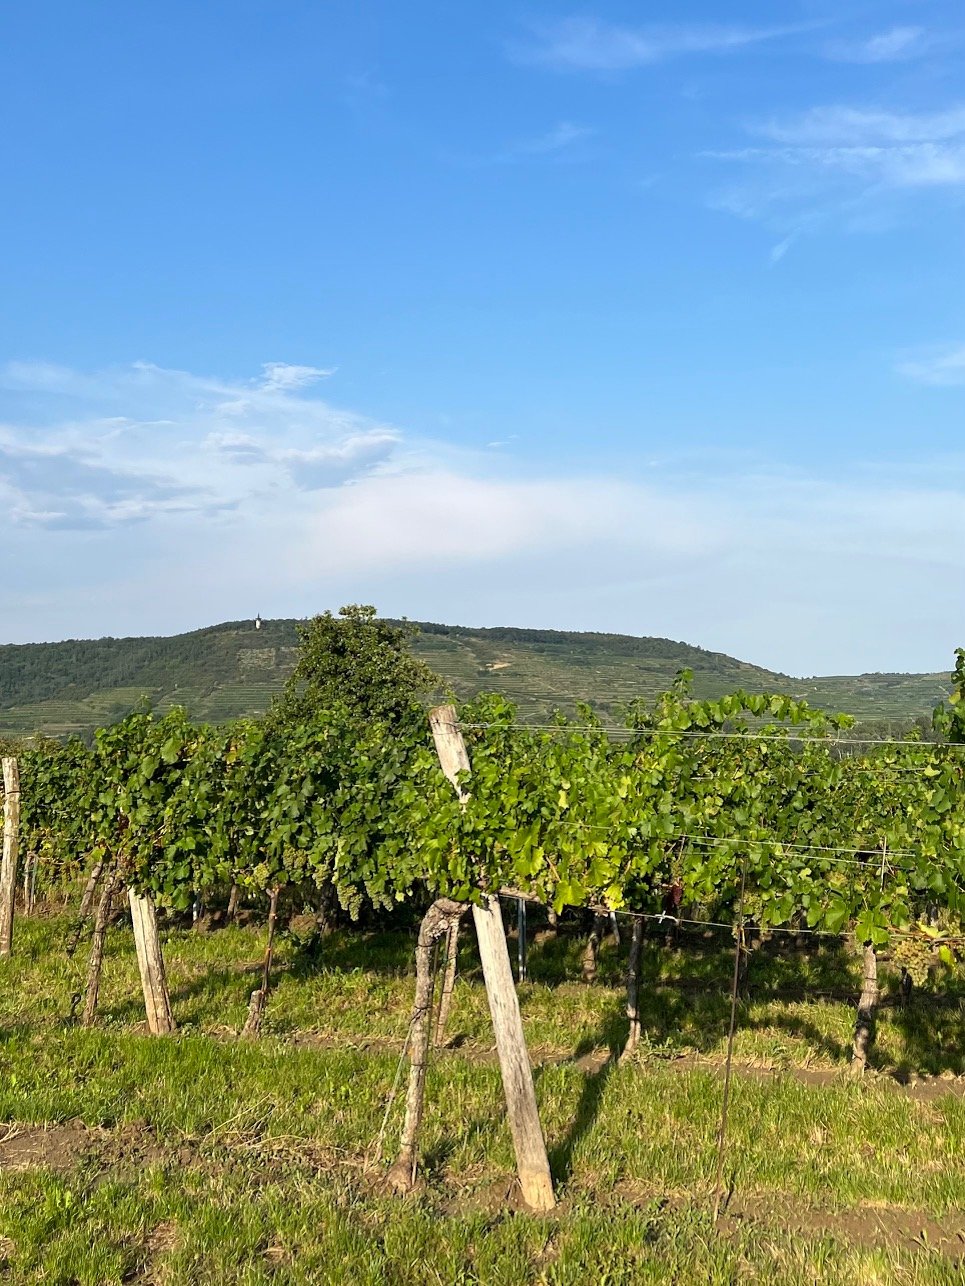 Heiligenstein vineyard in the distance